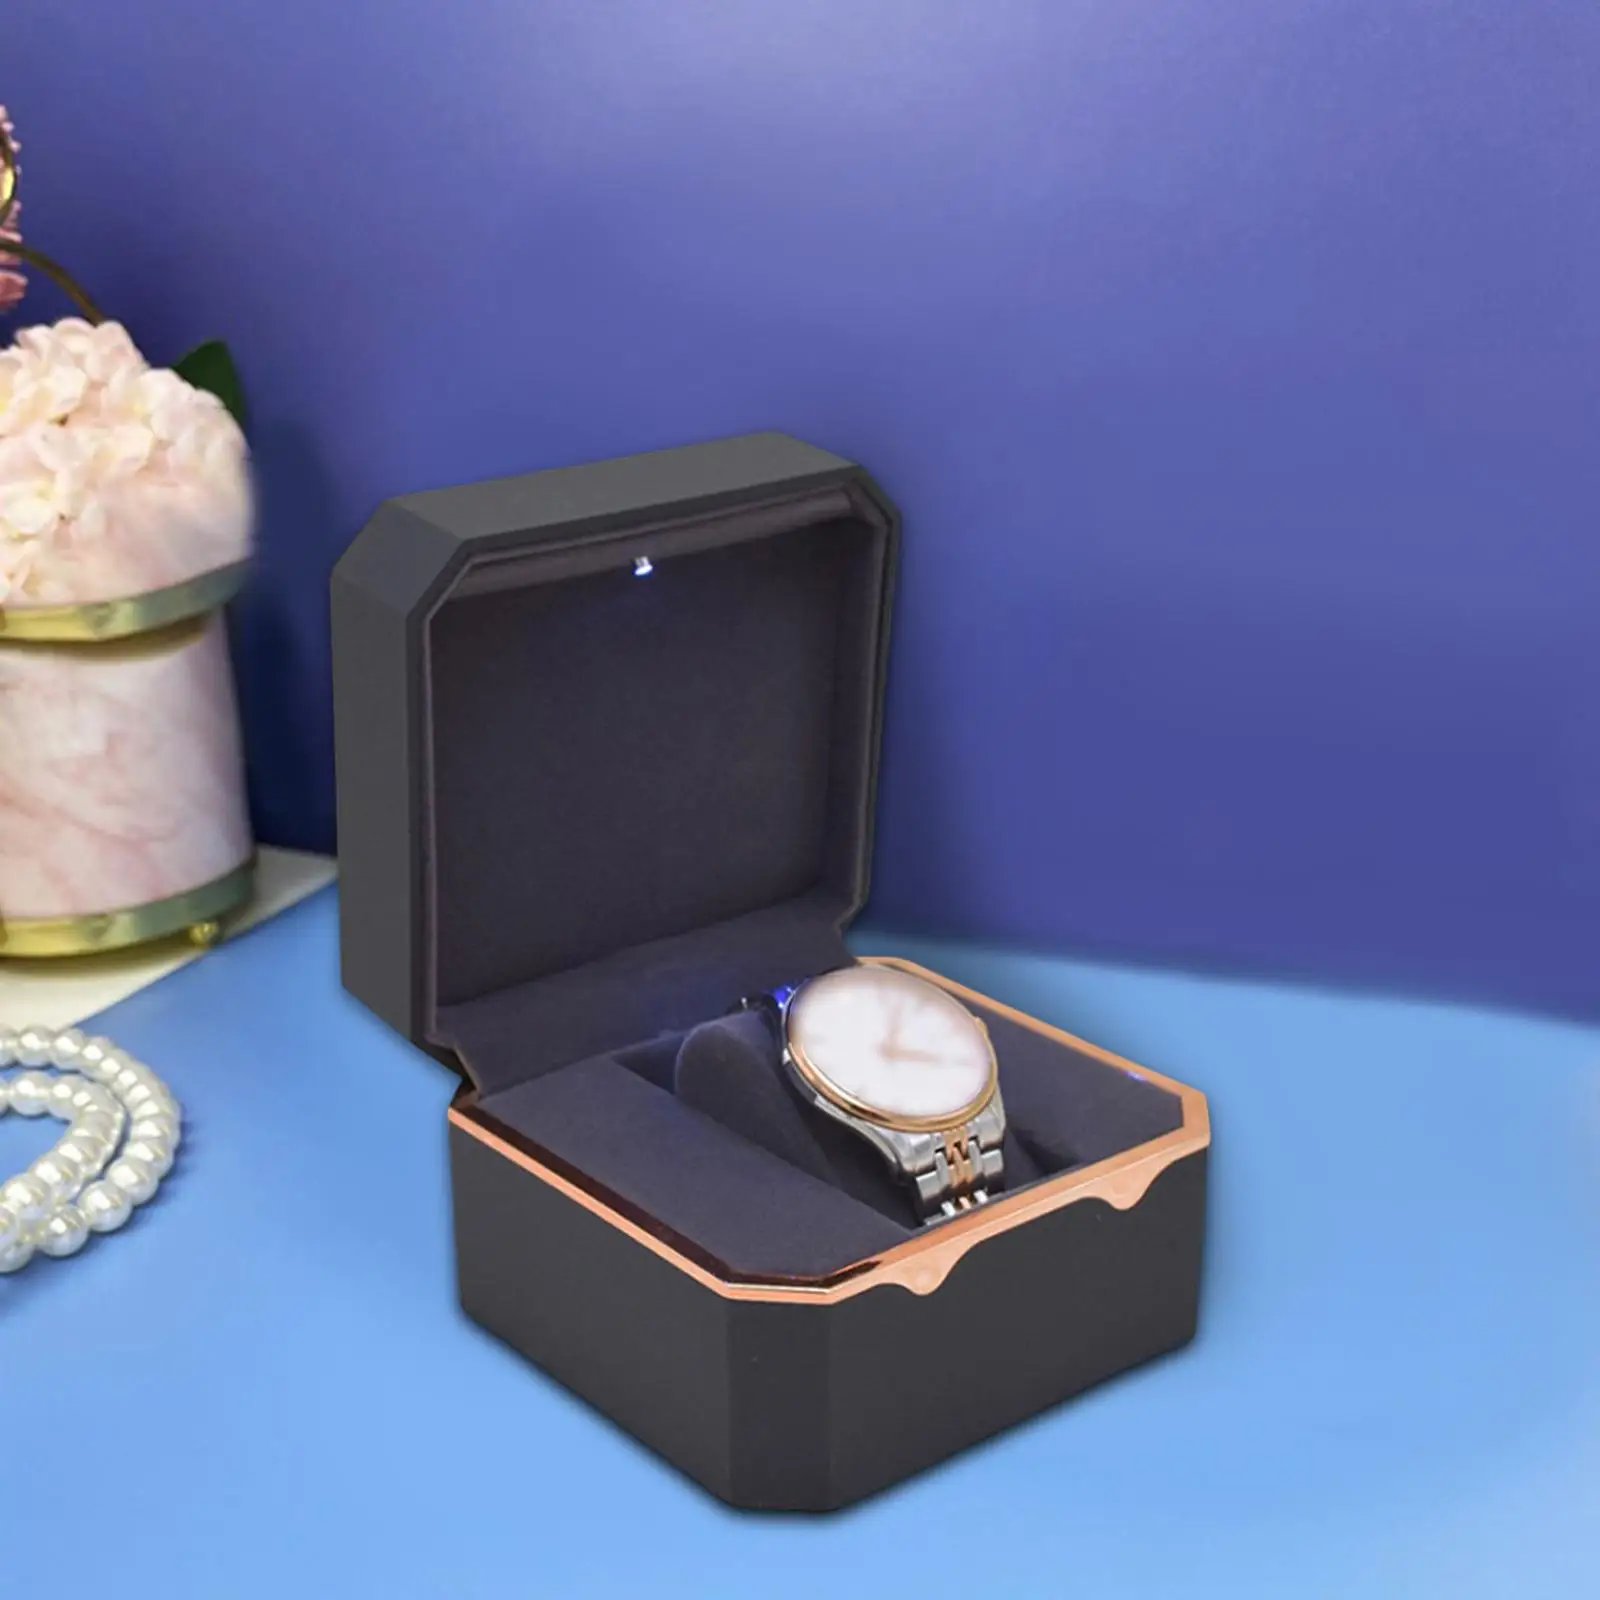 Watch Case, Single Showcase Display Drawer Case Organizer for Birthday Gifts Wristwatch Bracelet, Valentines Day, Men